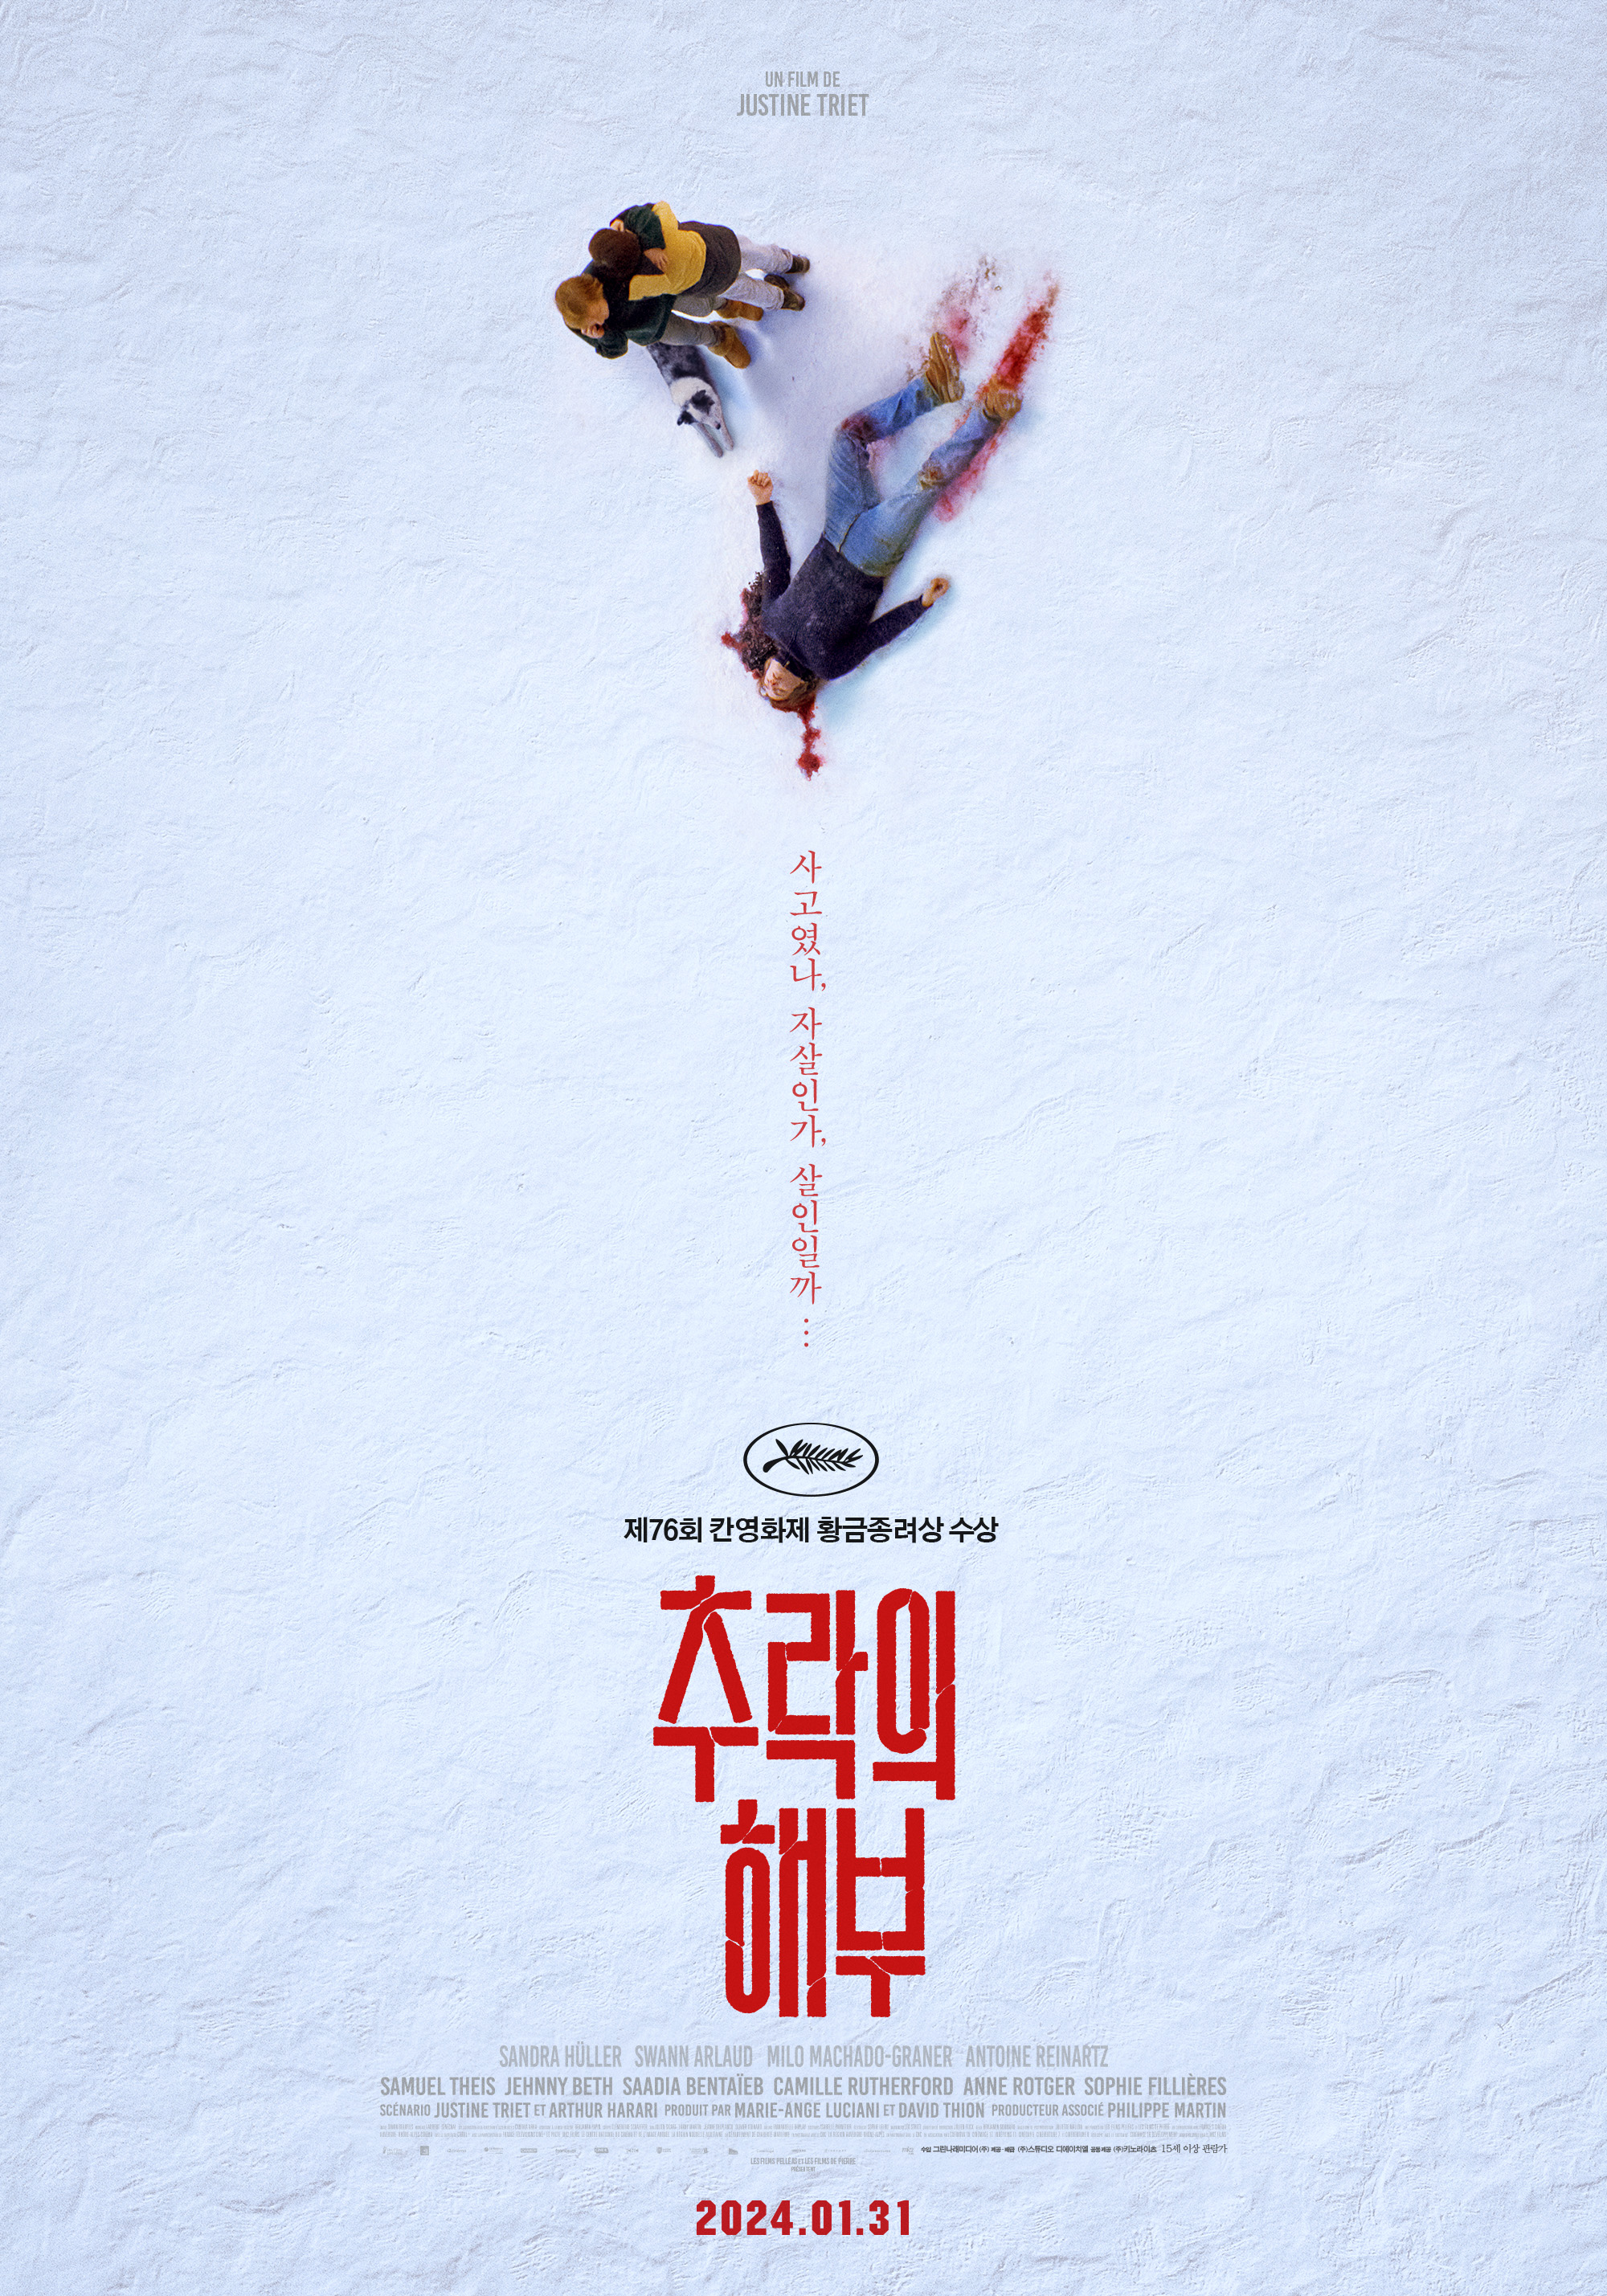 1월 31일 문화의 날 할인 개봉 영화 추락의 해부 웡카 아톰 새로운 시작 킹덤 엑소더스 출연진 평점 정보